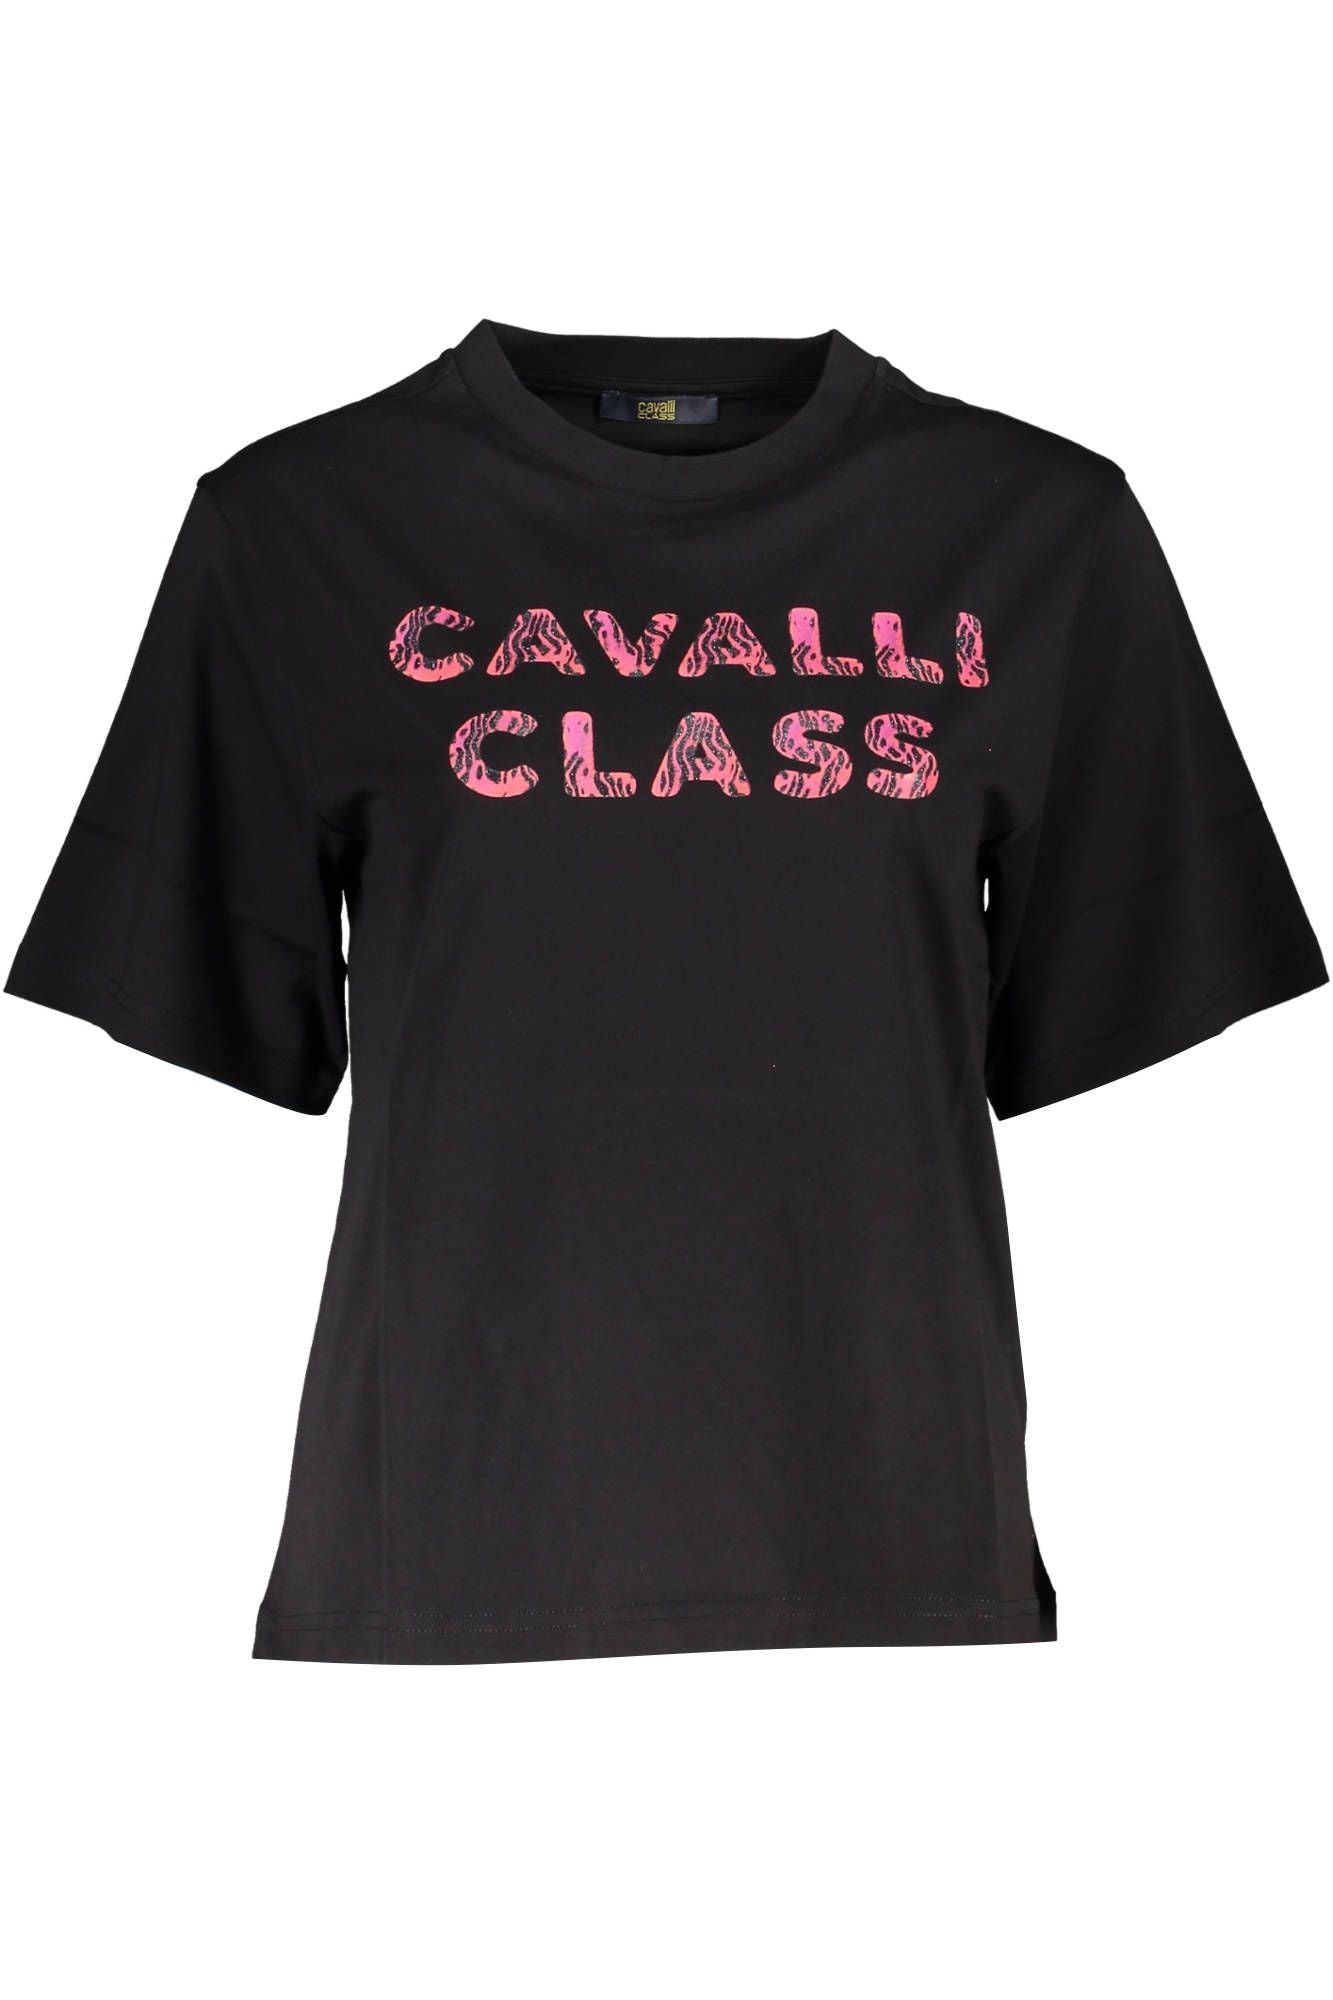 Cavalli Class Elegant Black Cotton Tee with Signature Print